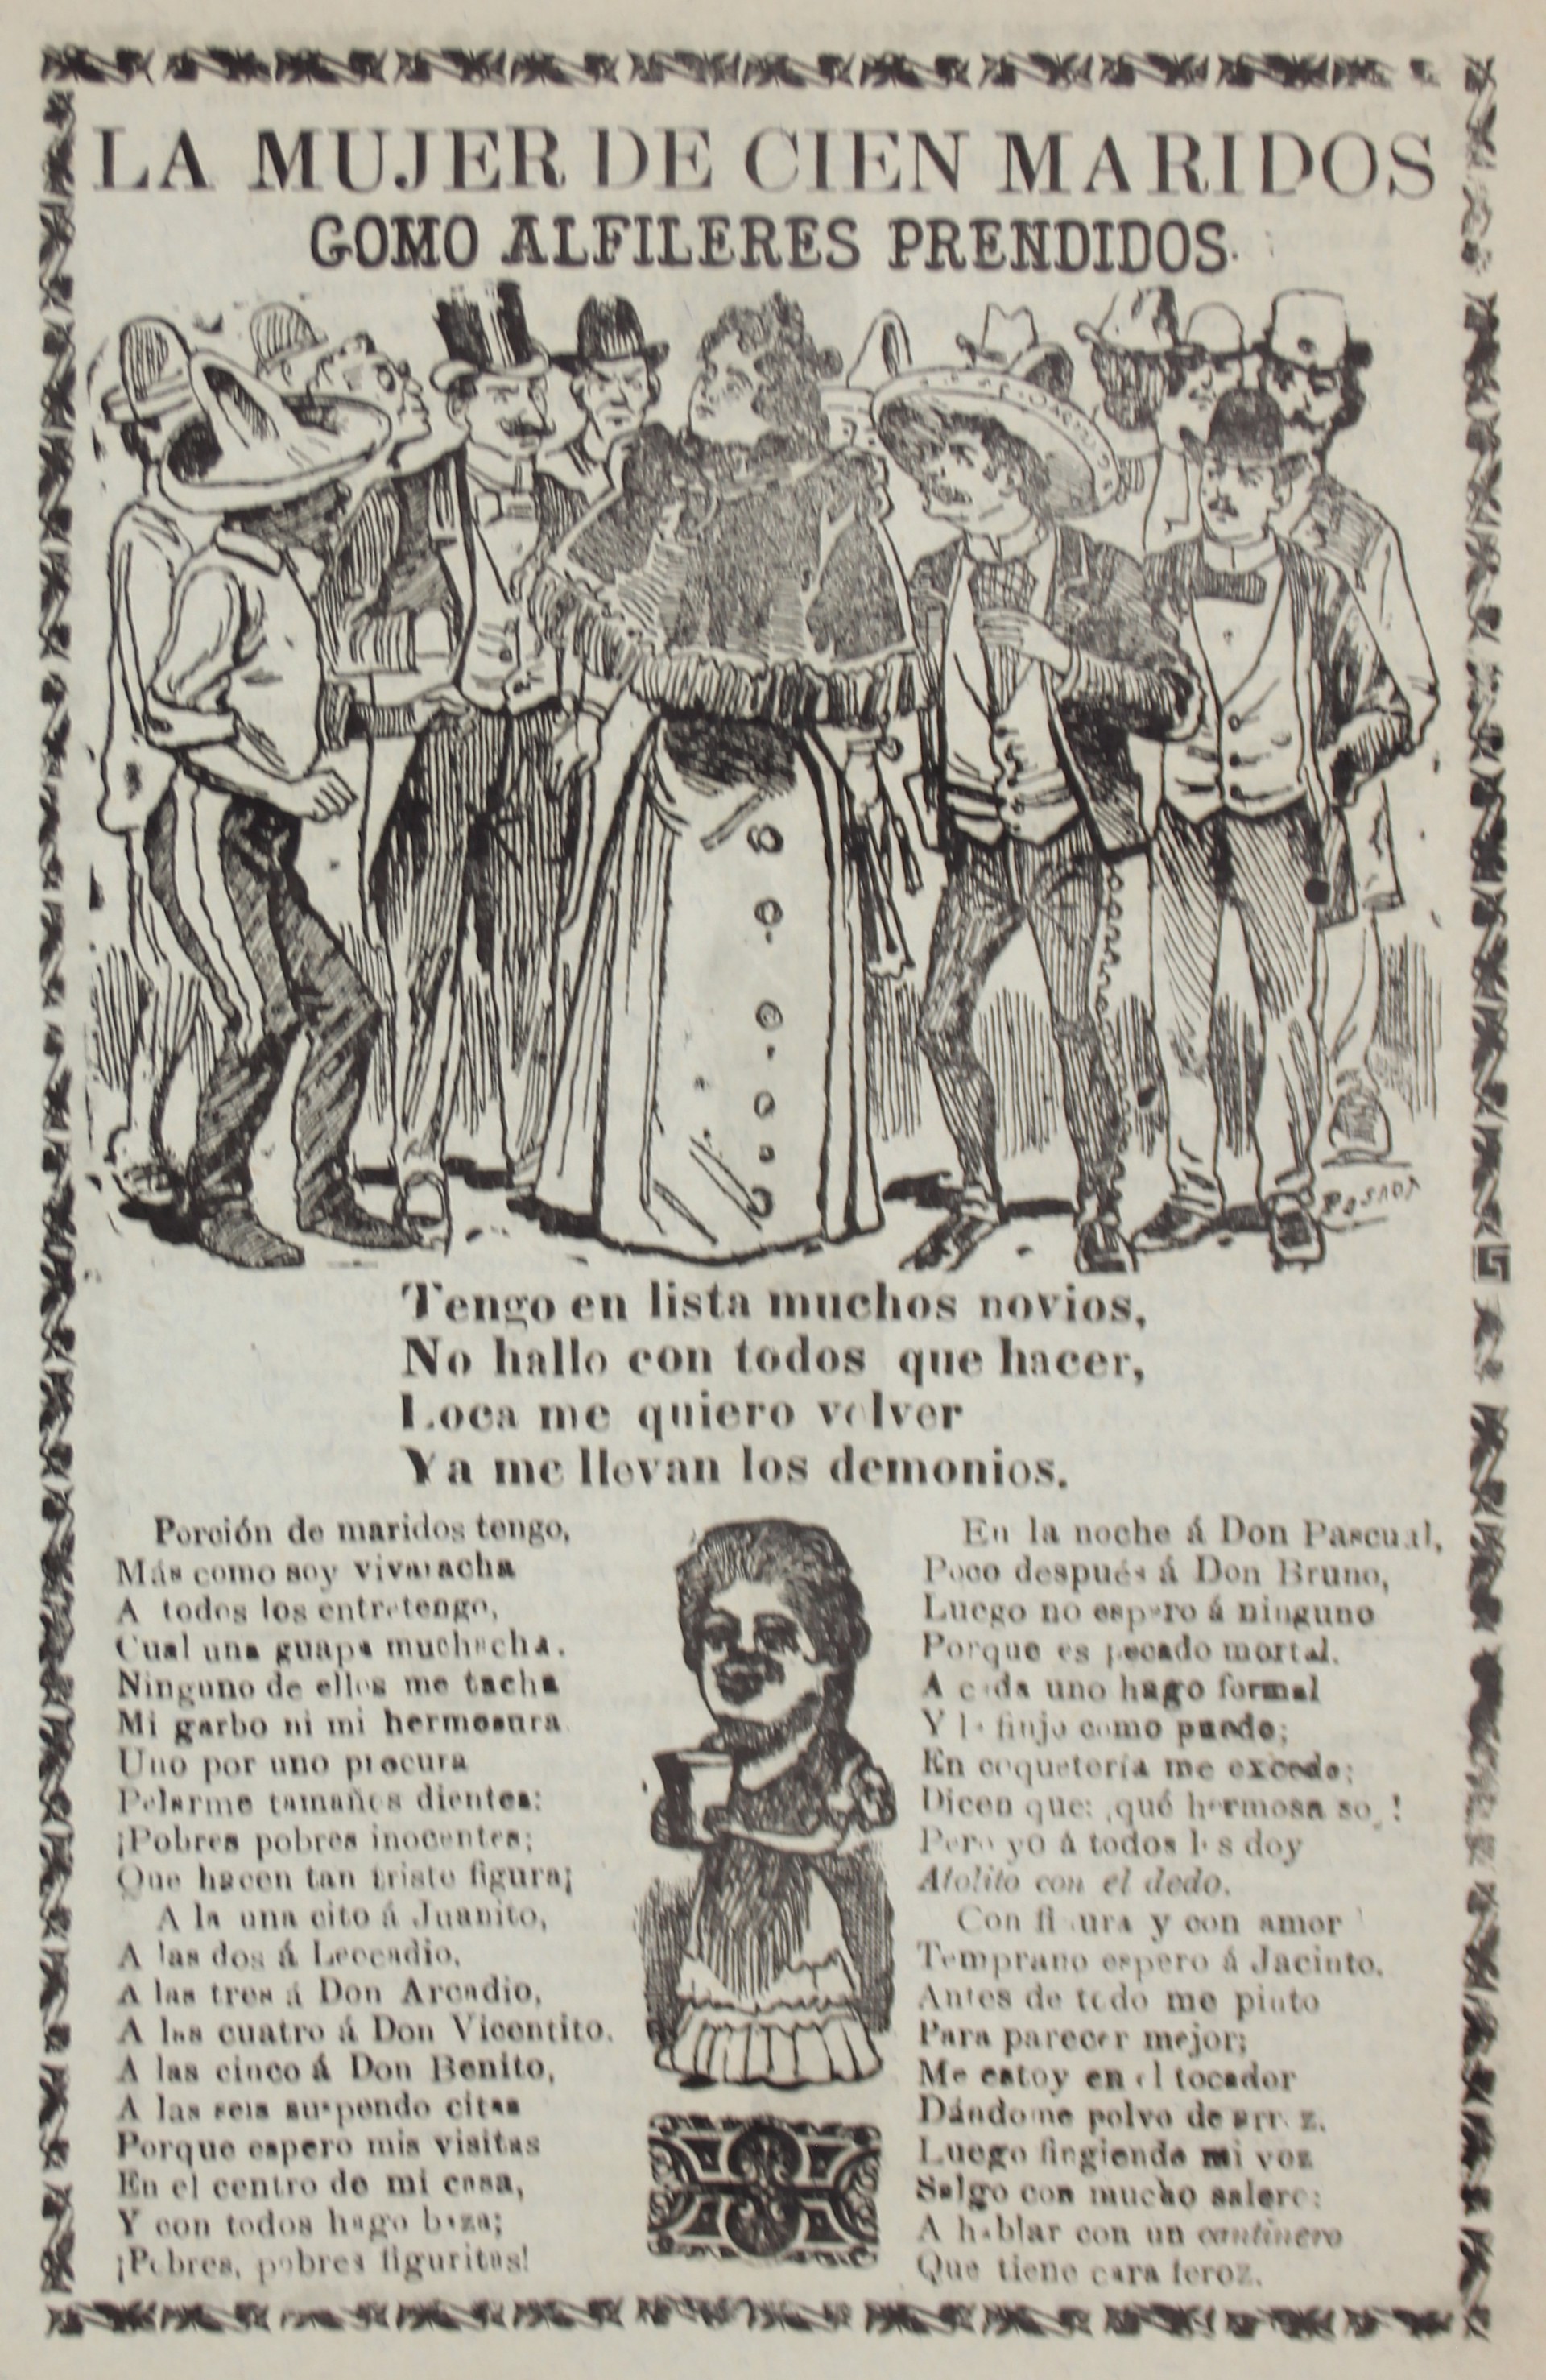 La Mujer de Cien Maridos by José Guadalupe Posada (1852 - 1913)